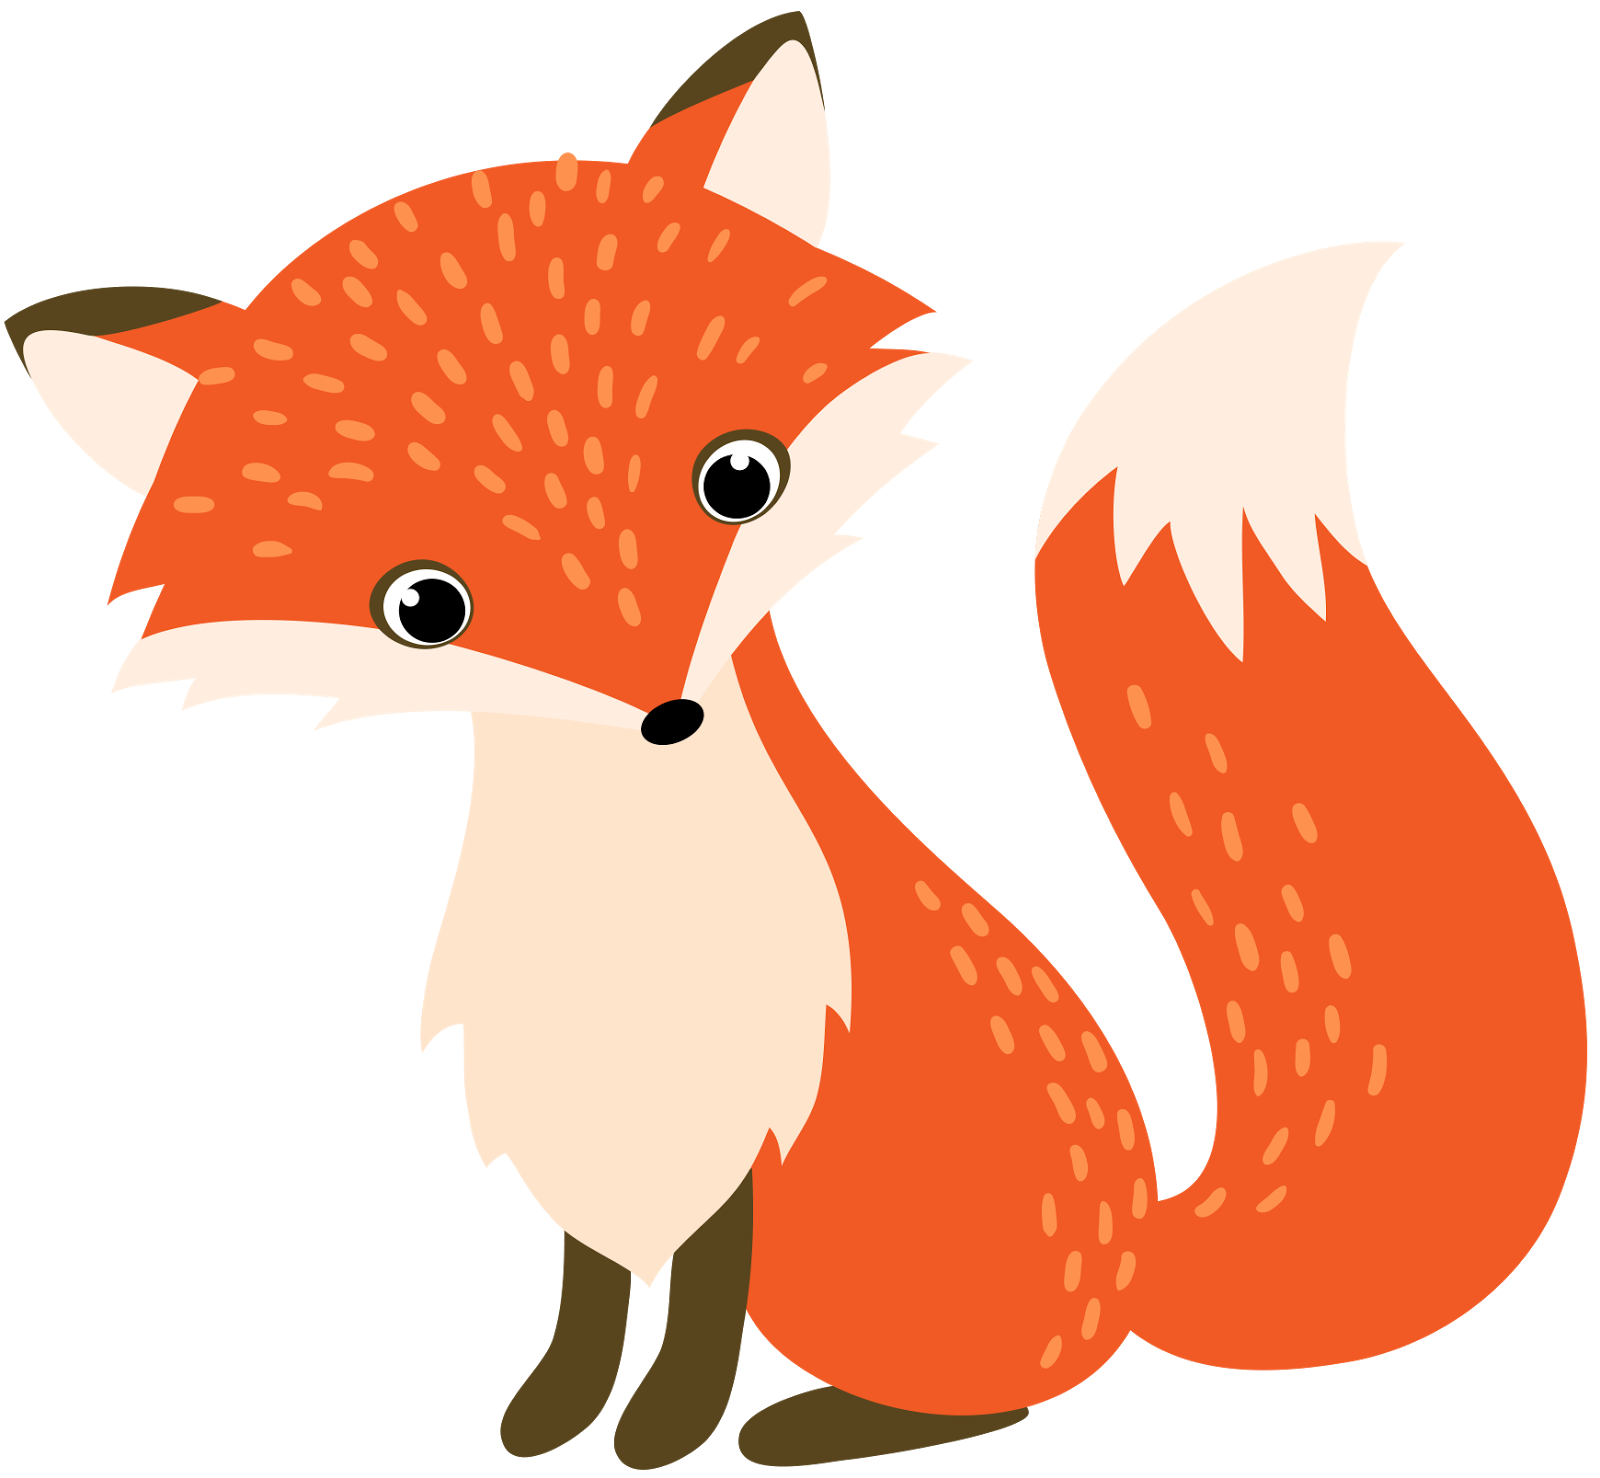 Red fox illustration.